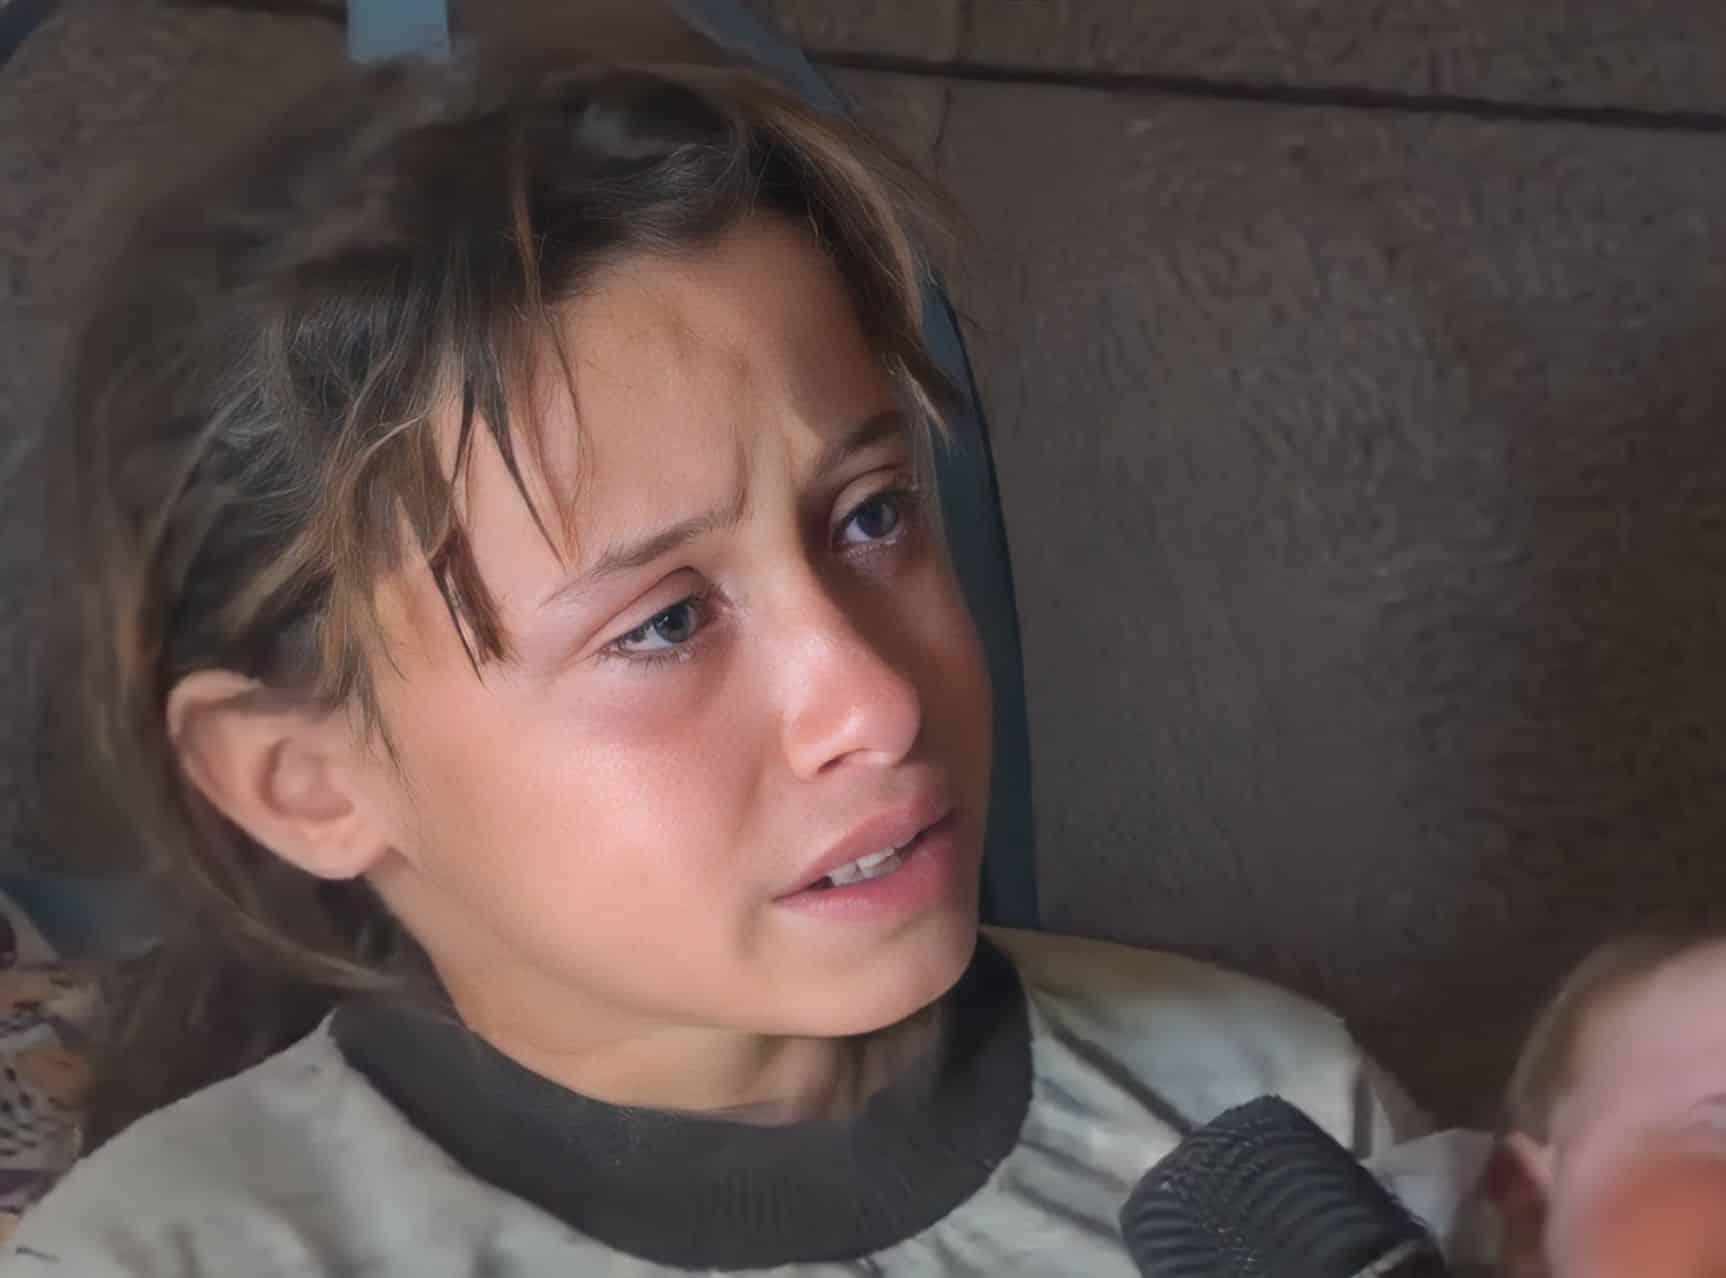 الطفلة السورية alarabtrend.com